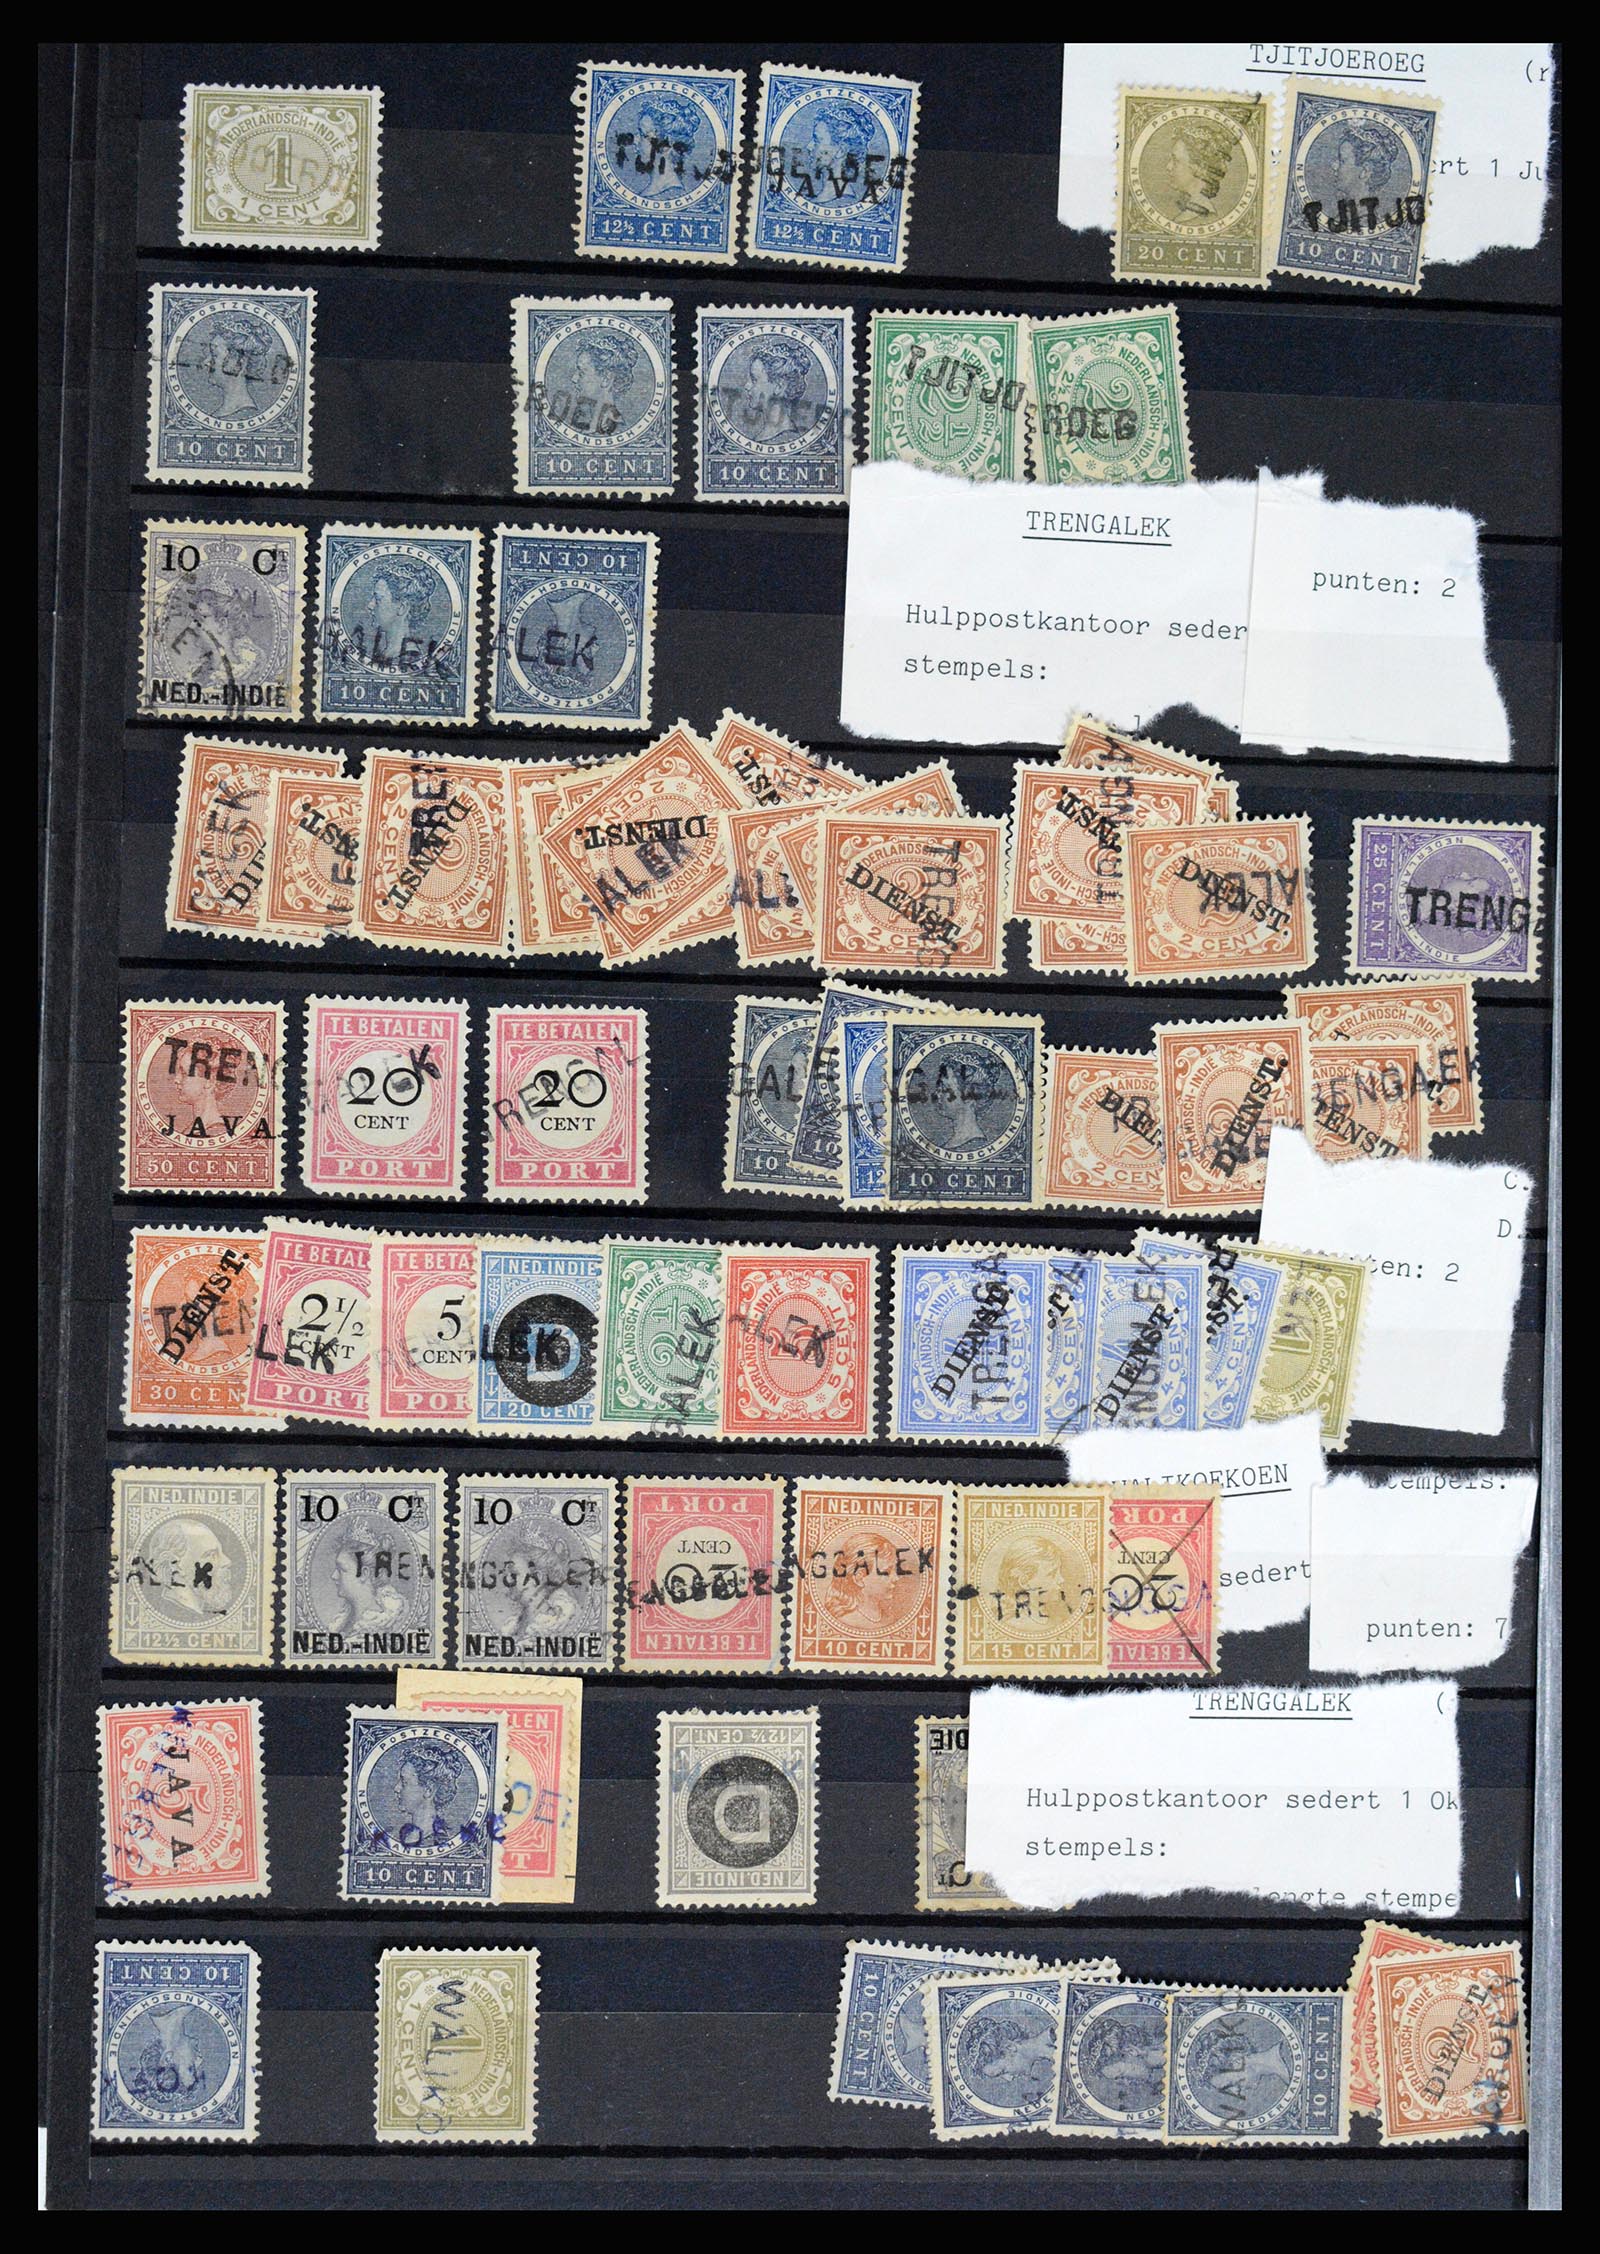 36512 076 - Stamp collection 36512 Nederlands Indië stempels 1872-1930.